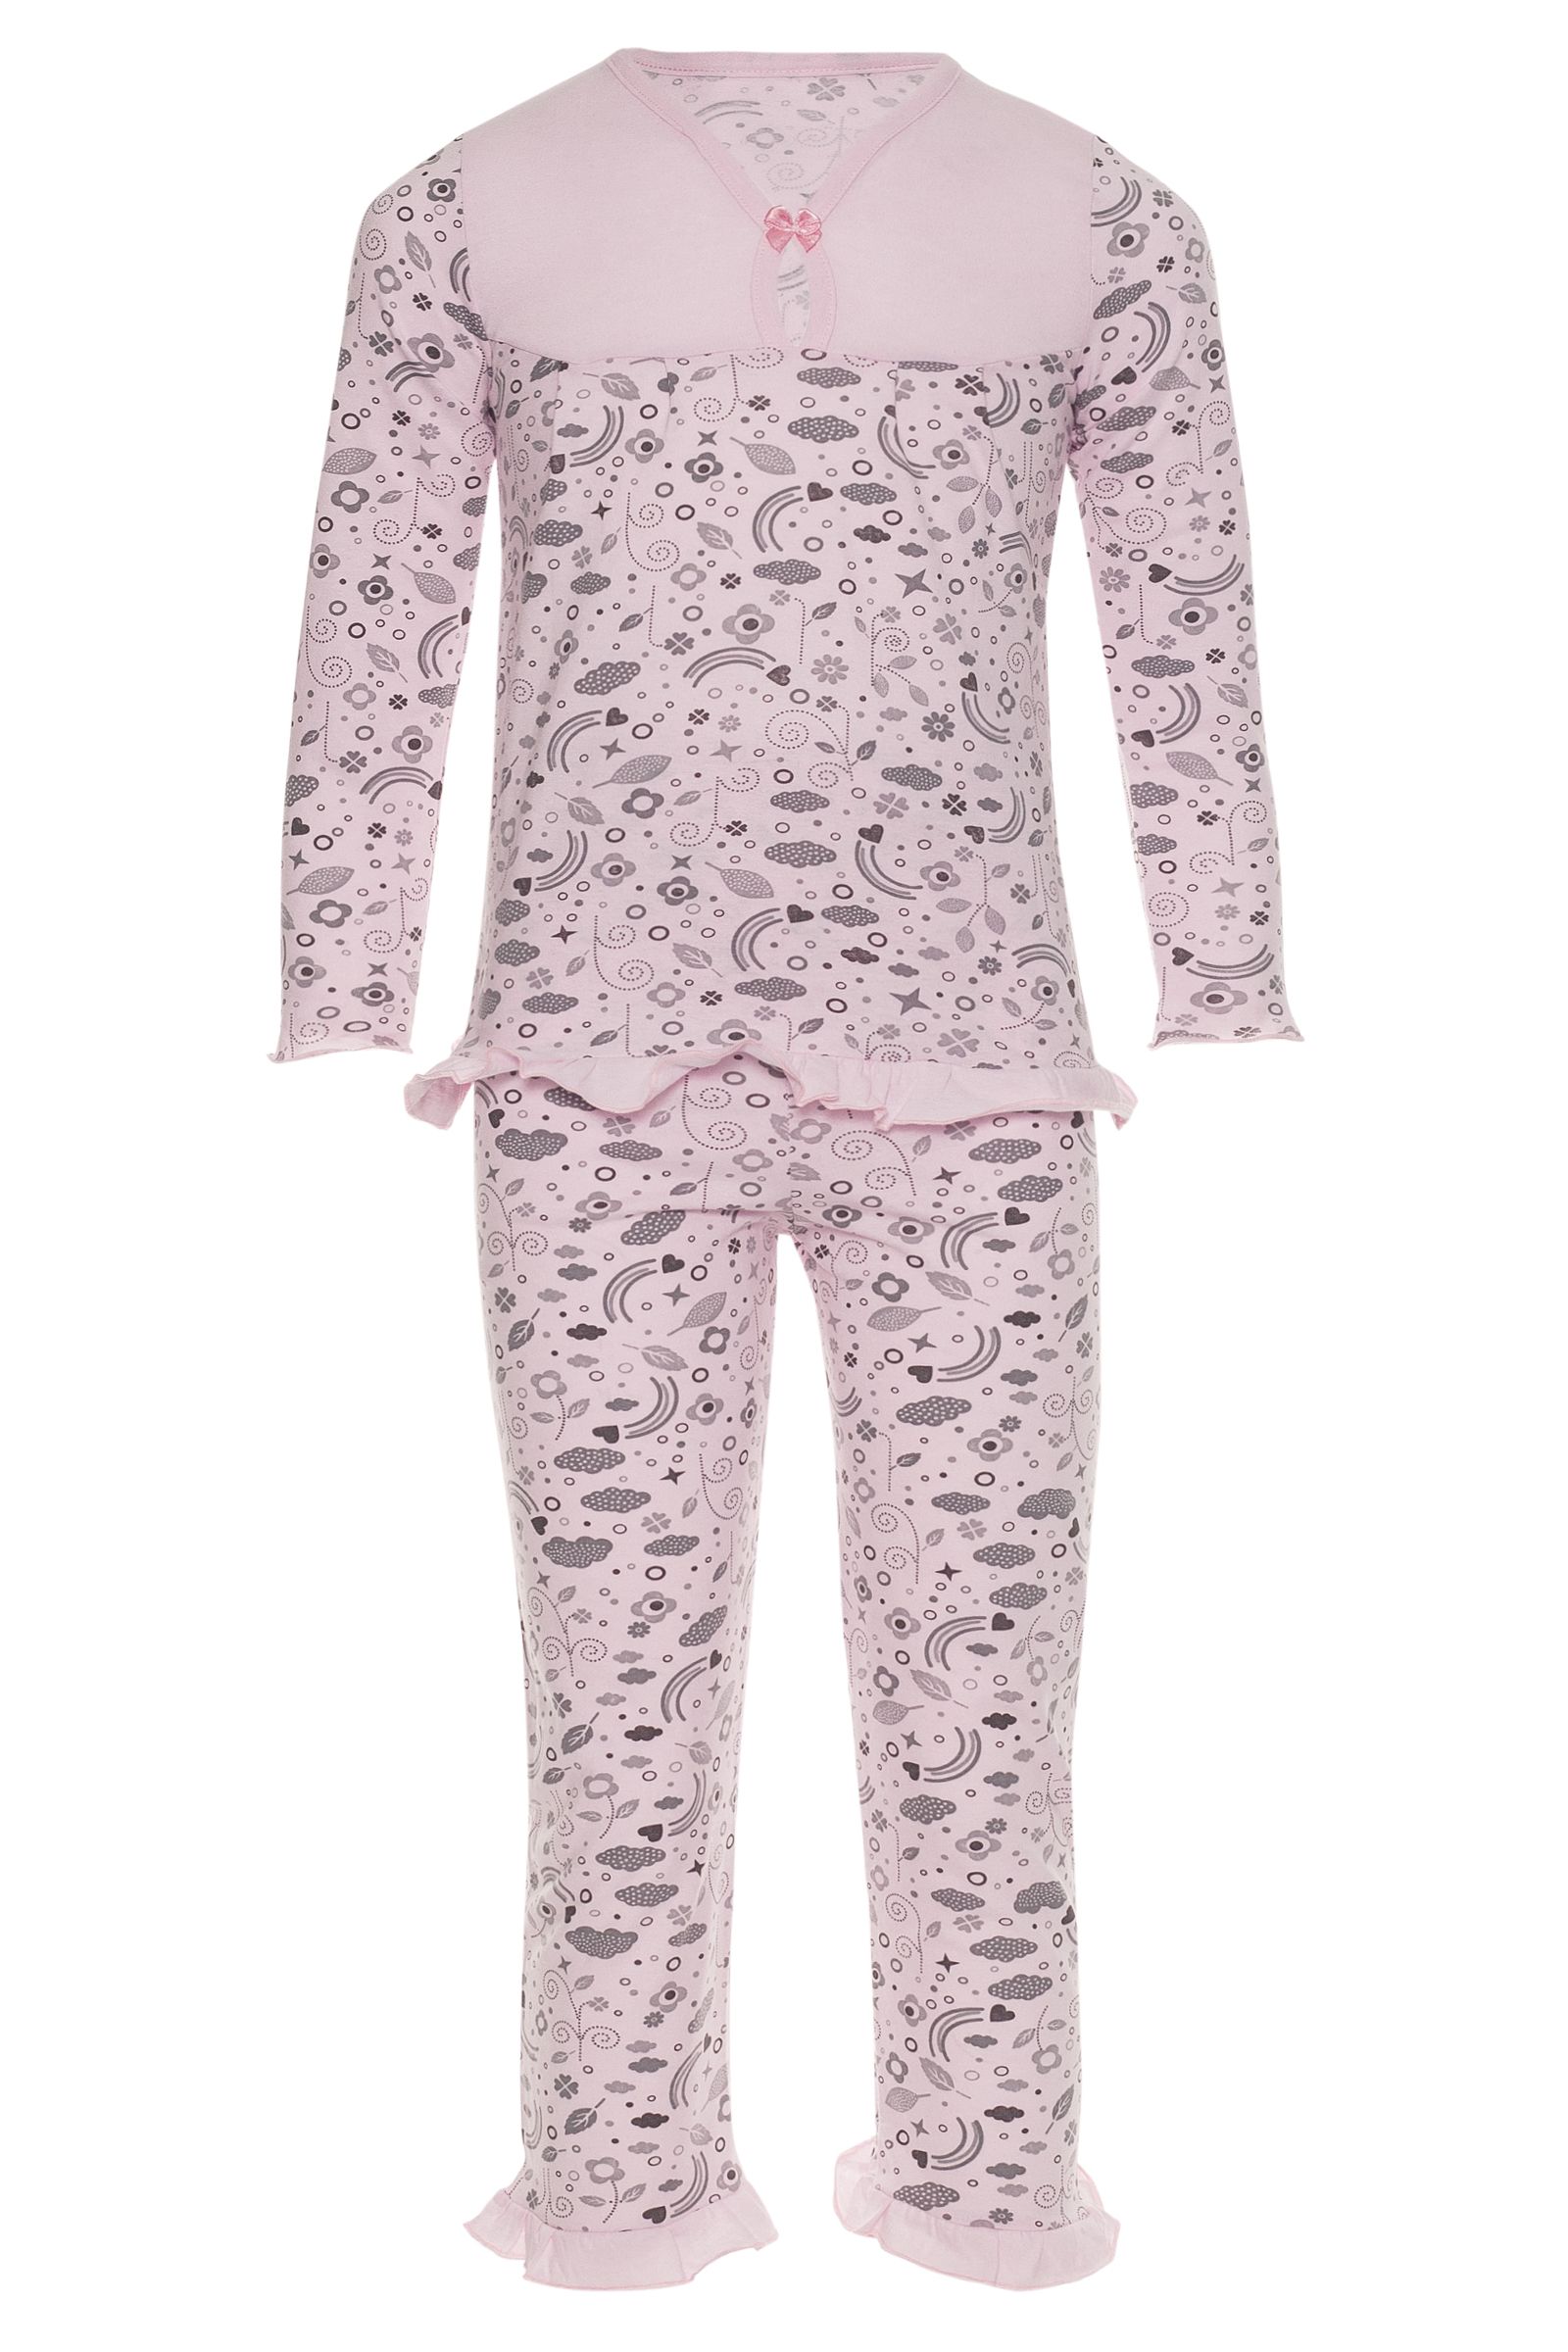 Пижама-ПЖ02-614К оптом от производителя детской одежды 'Алёна'